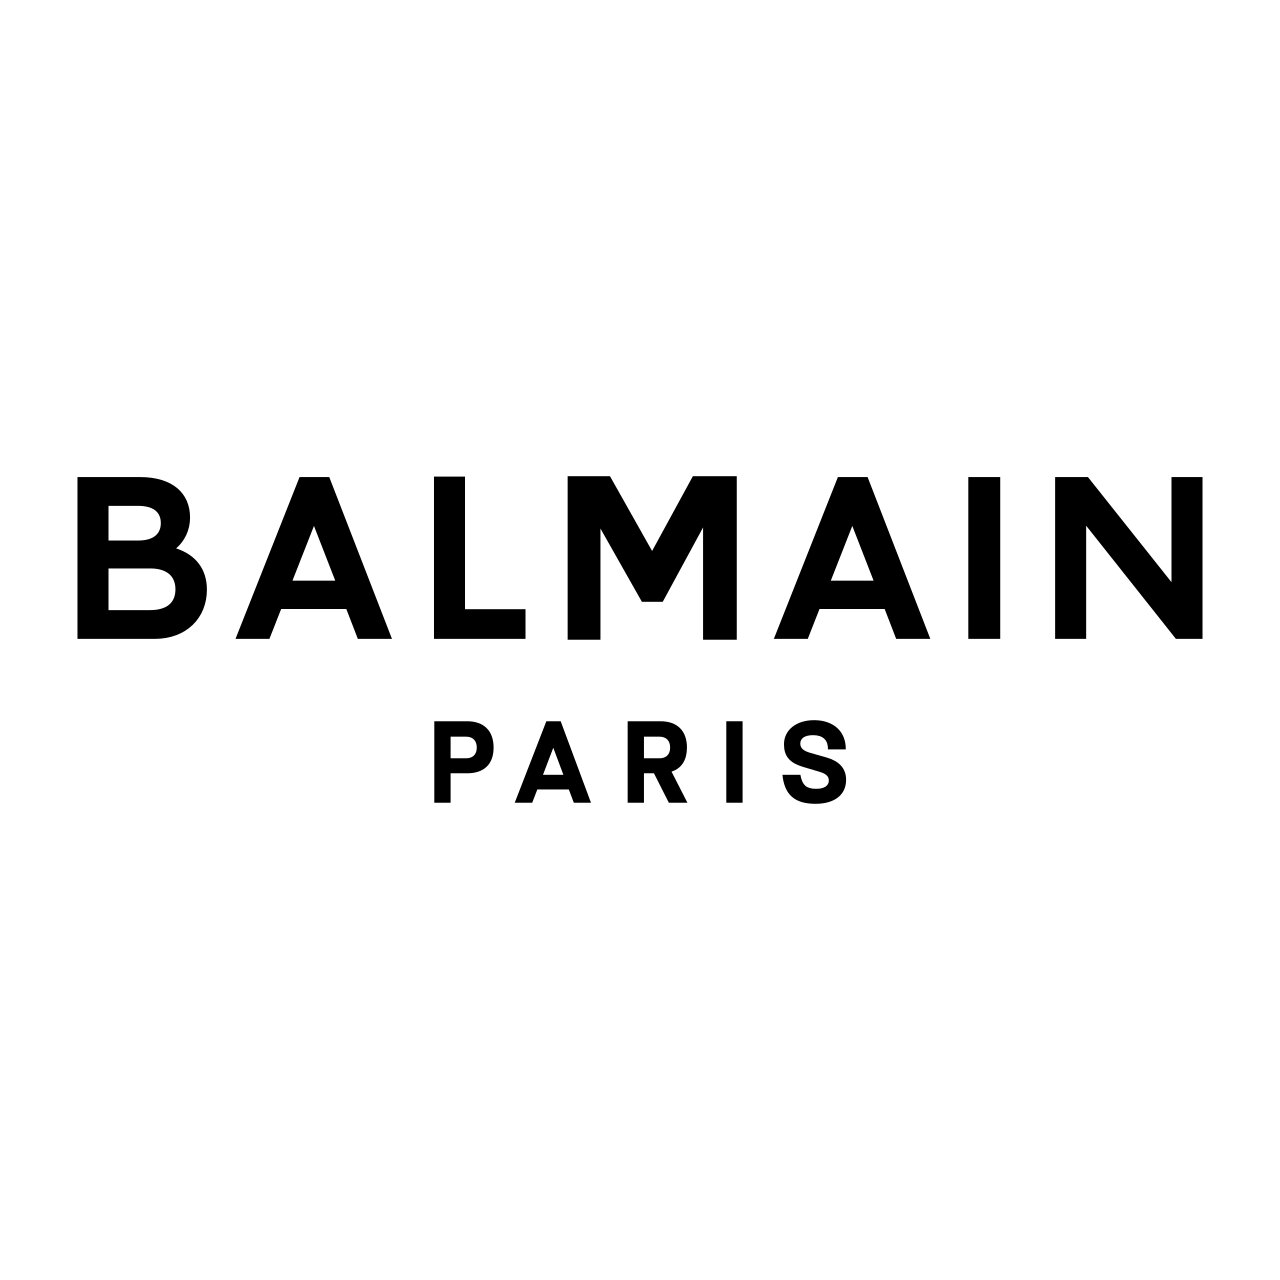 BALMAIN_PARIS logo (1) (1)